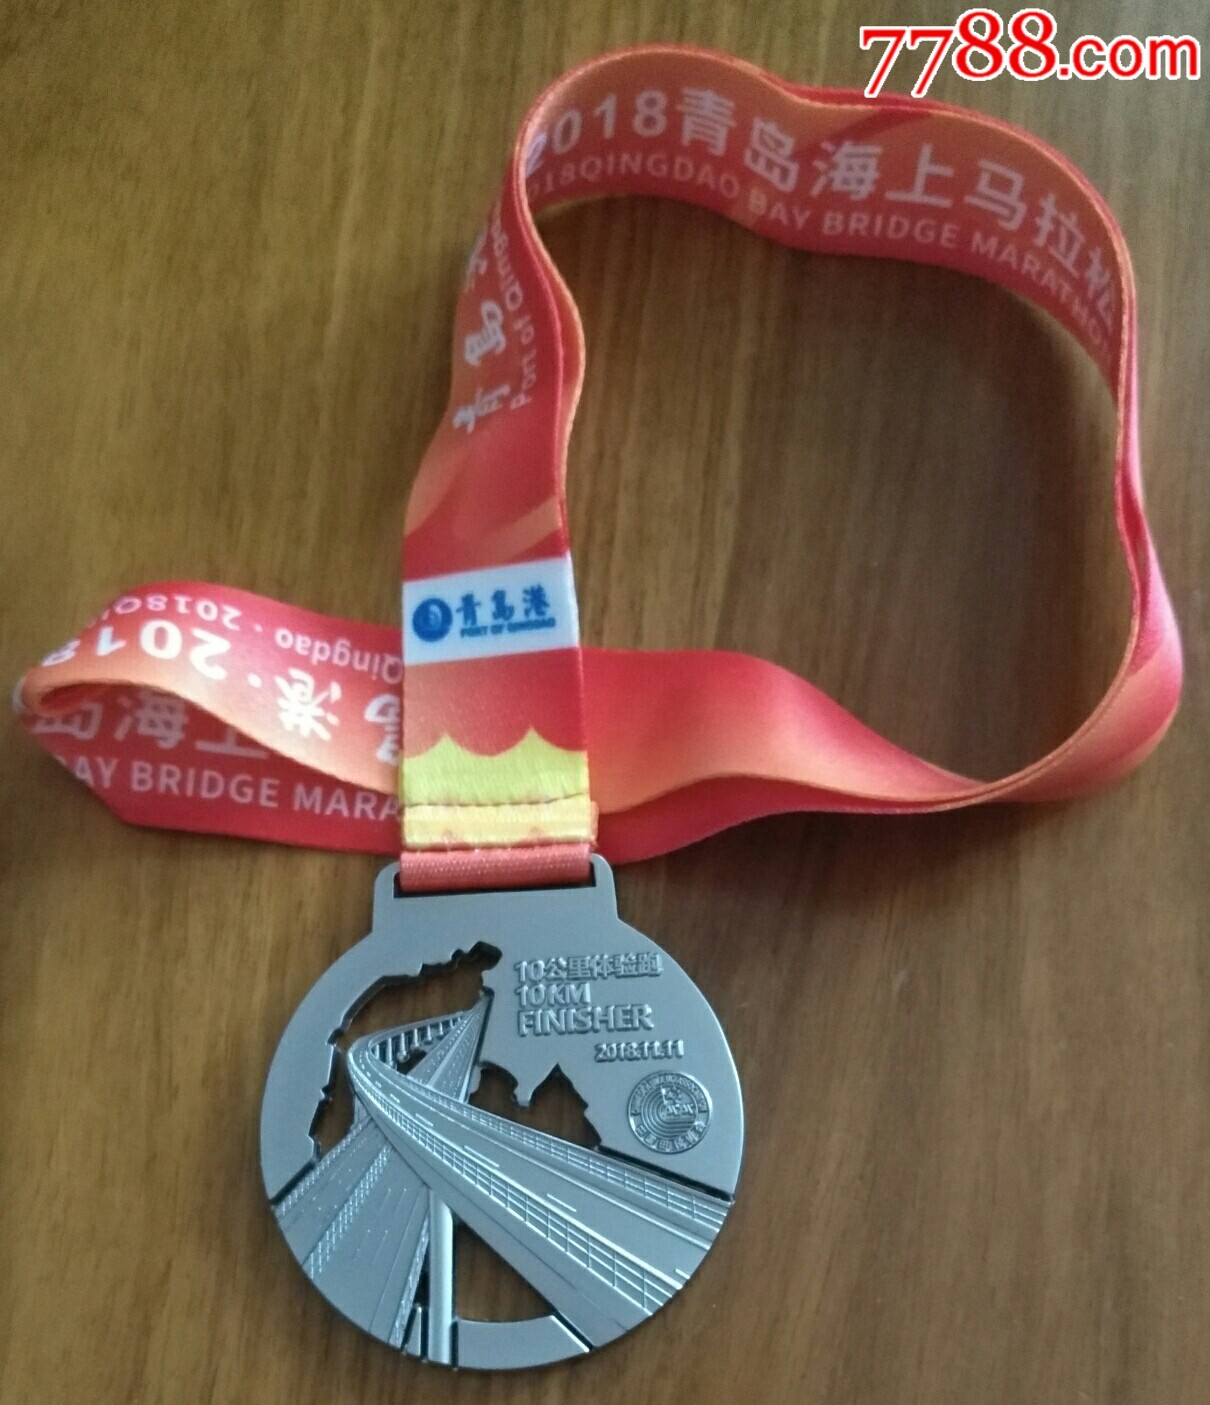 2018青岛海上马拉松赛奖牌(10公里马拉松体验赛10km)